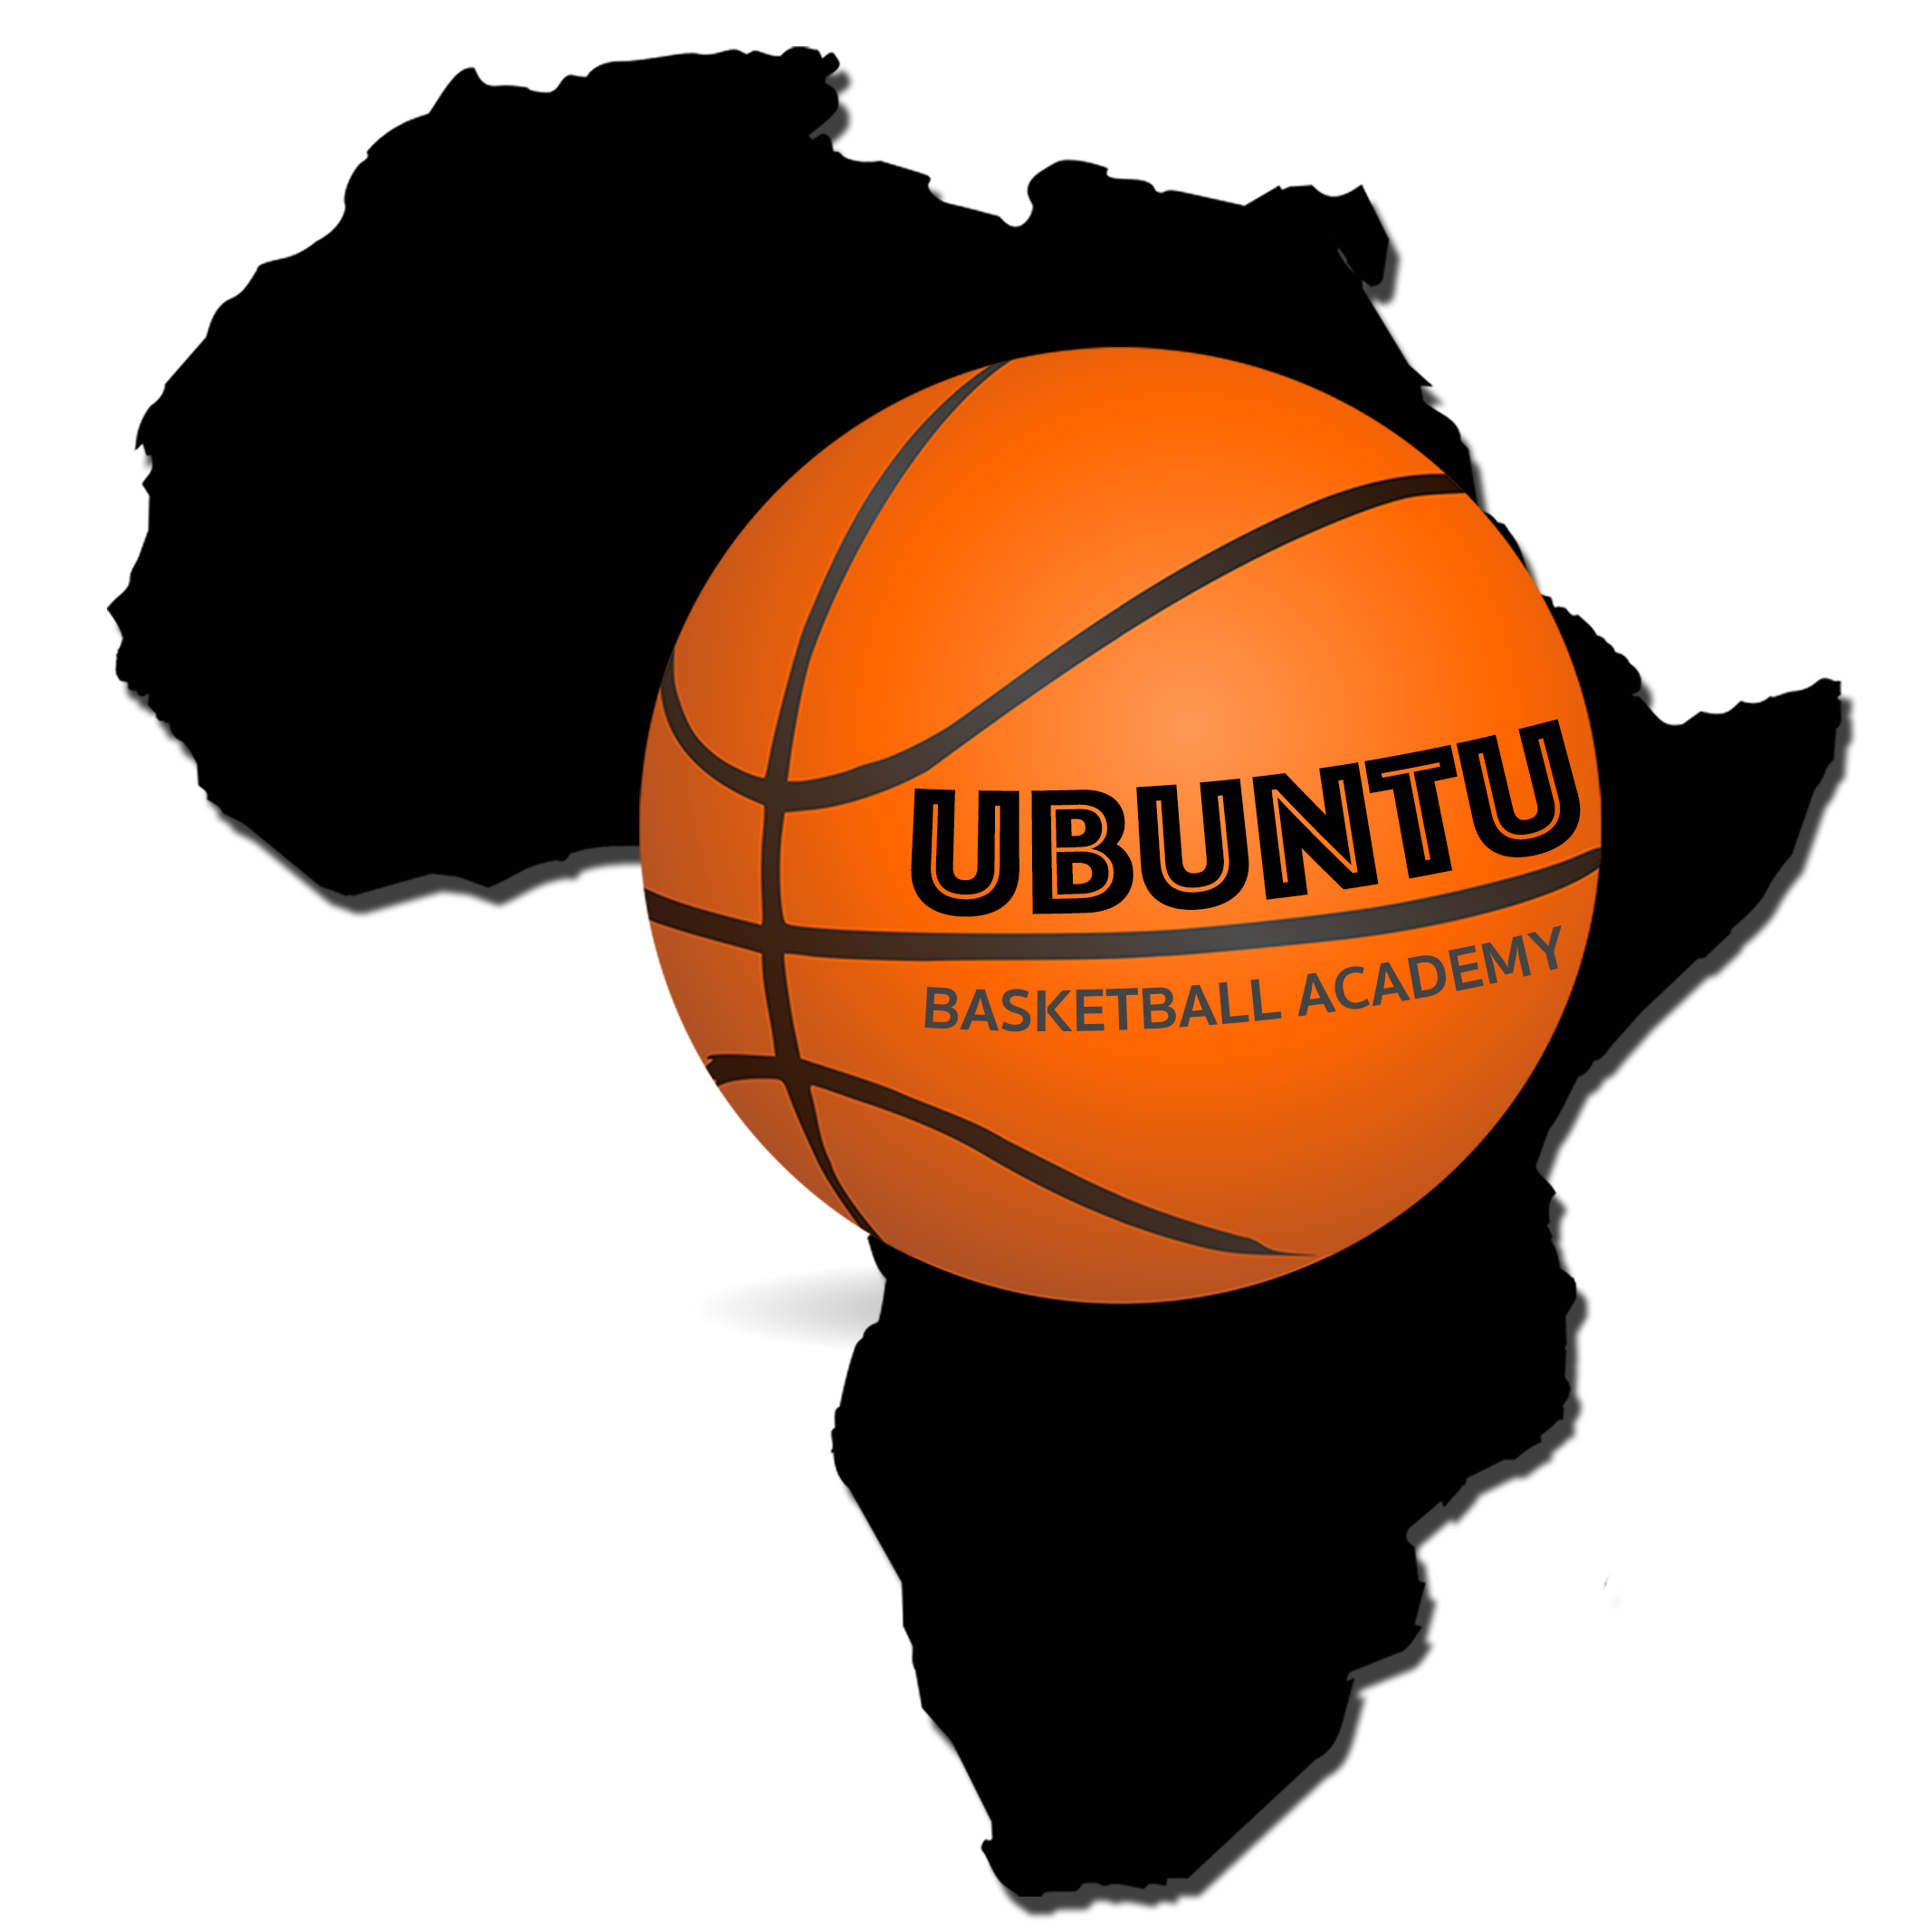 Ubuntu Basketball Academy